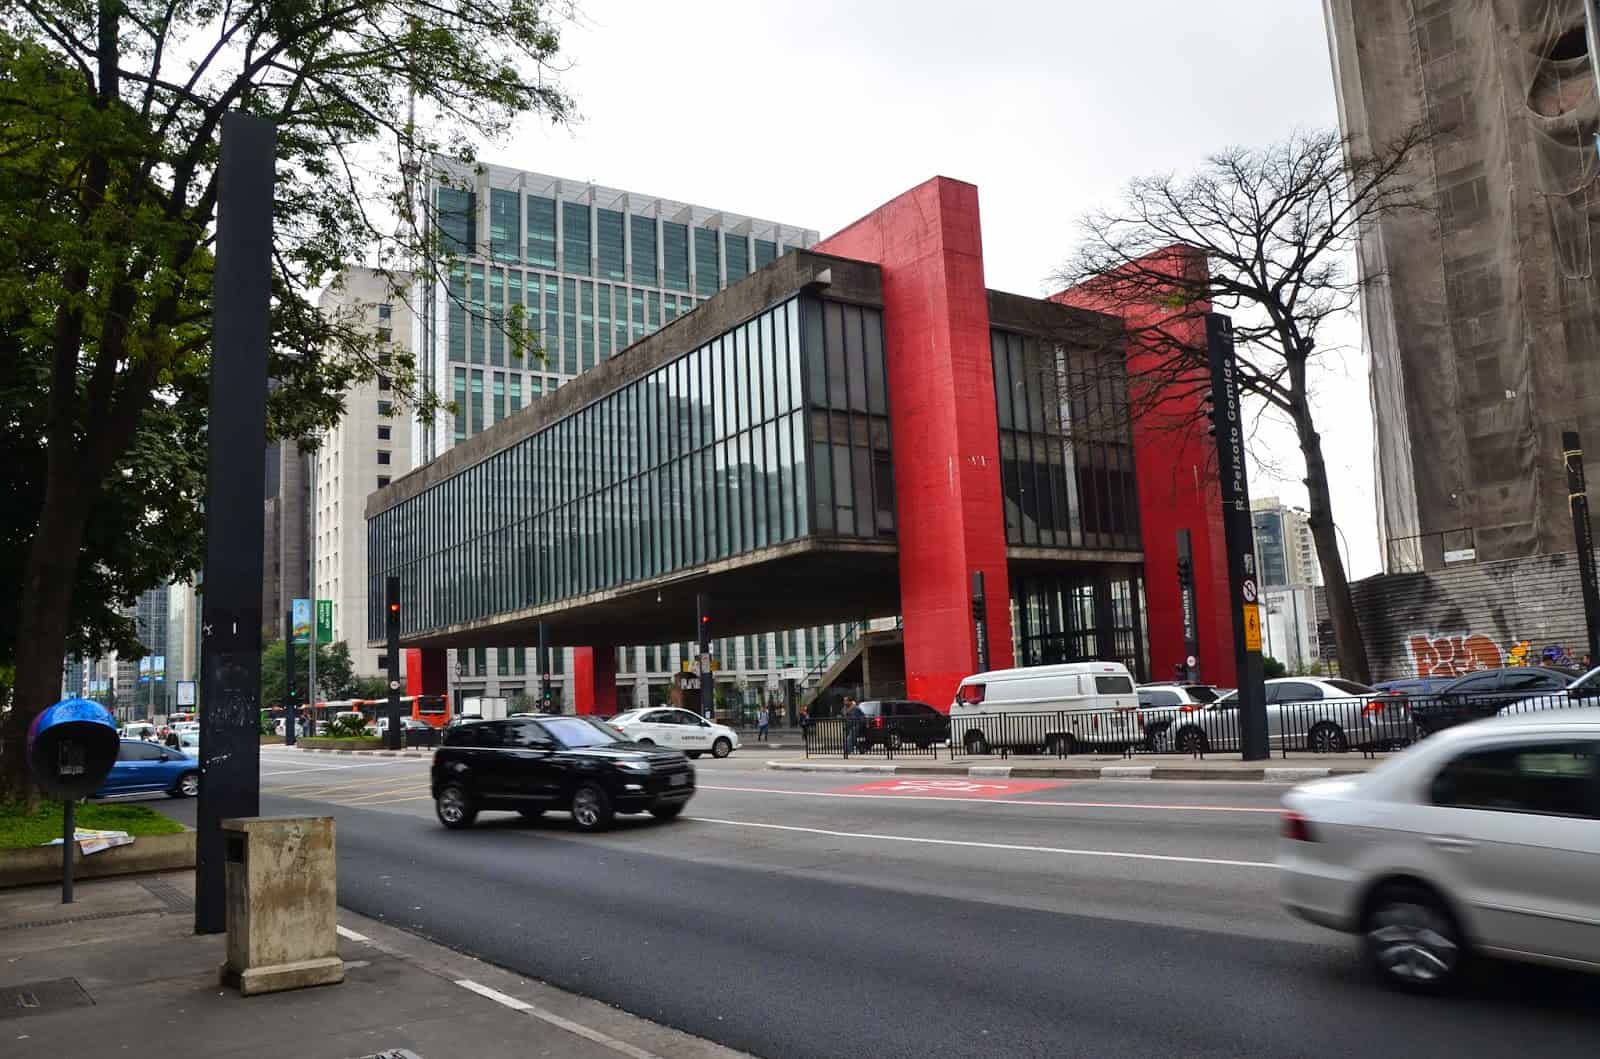 Museu de Arte de São Paulo (MASP) in São Paulo, Brazil